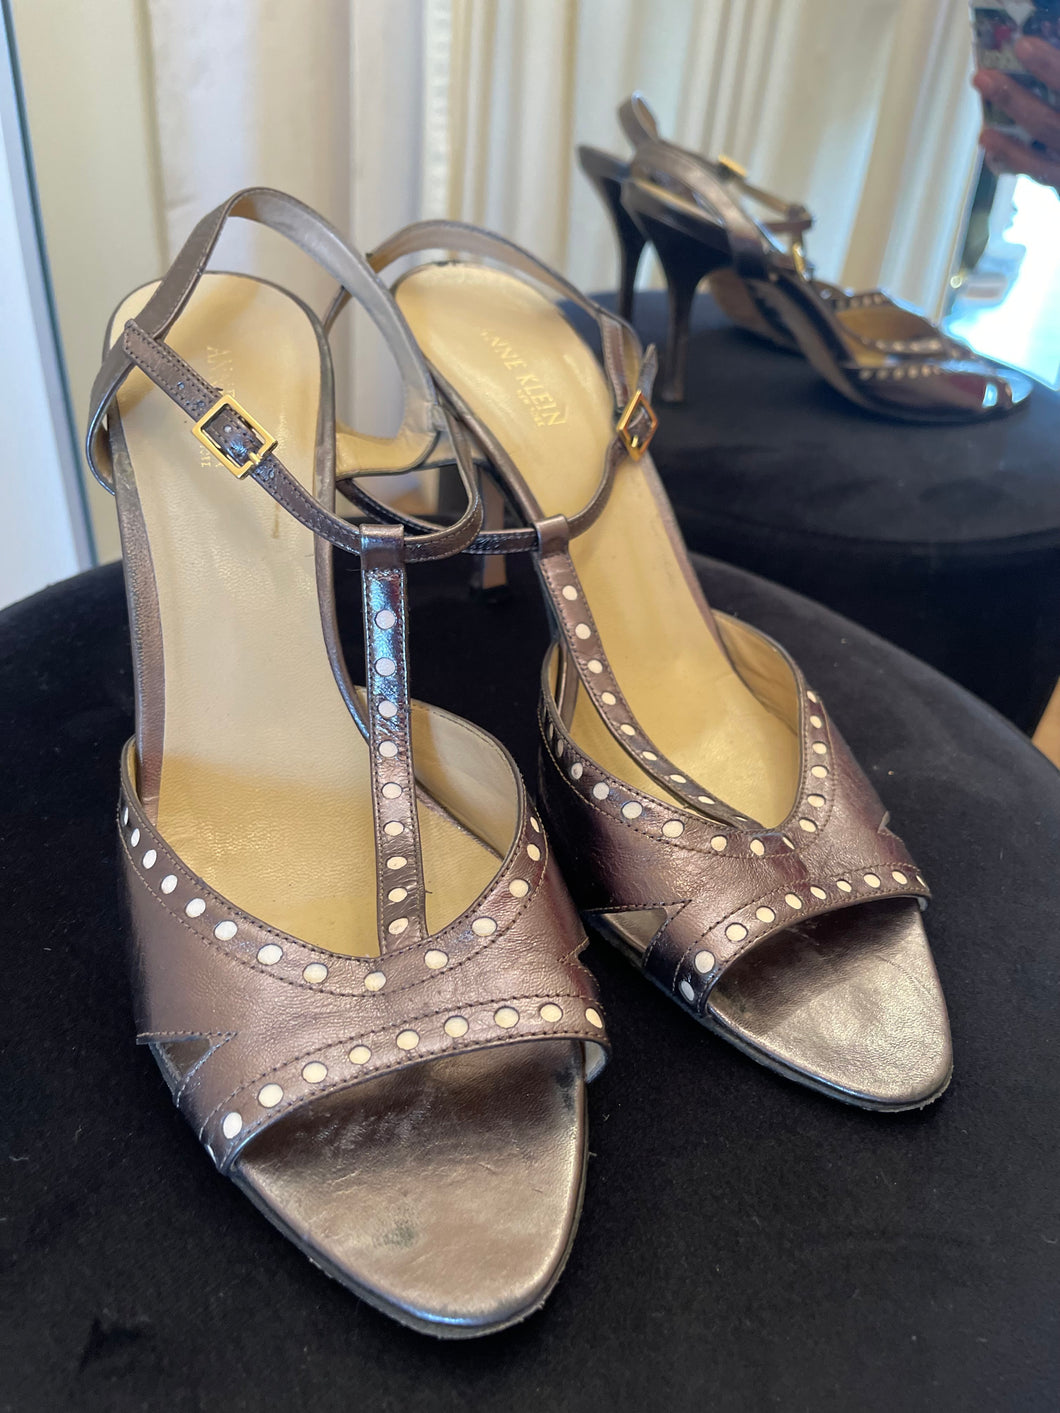 Anne Klein Strappy heel shoes